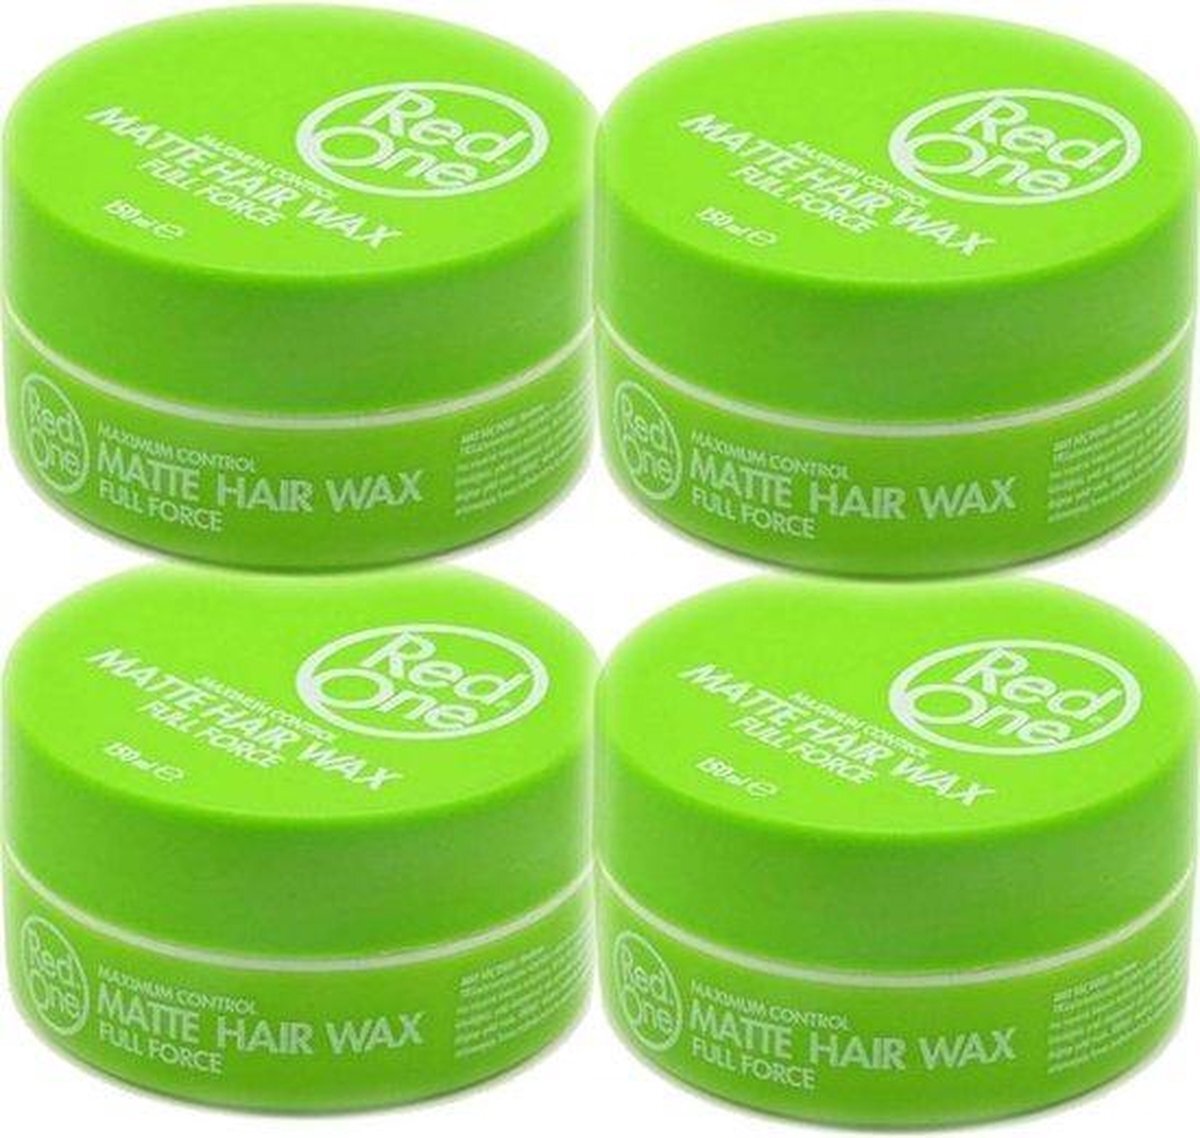 RedOne Green Hair Wax| Haarwax| Haargel| Gel| Aqua wax| Groen Aqua haarwax| 4 stuks| 4 pieces